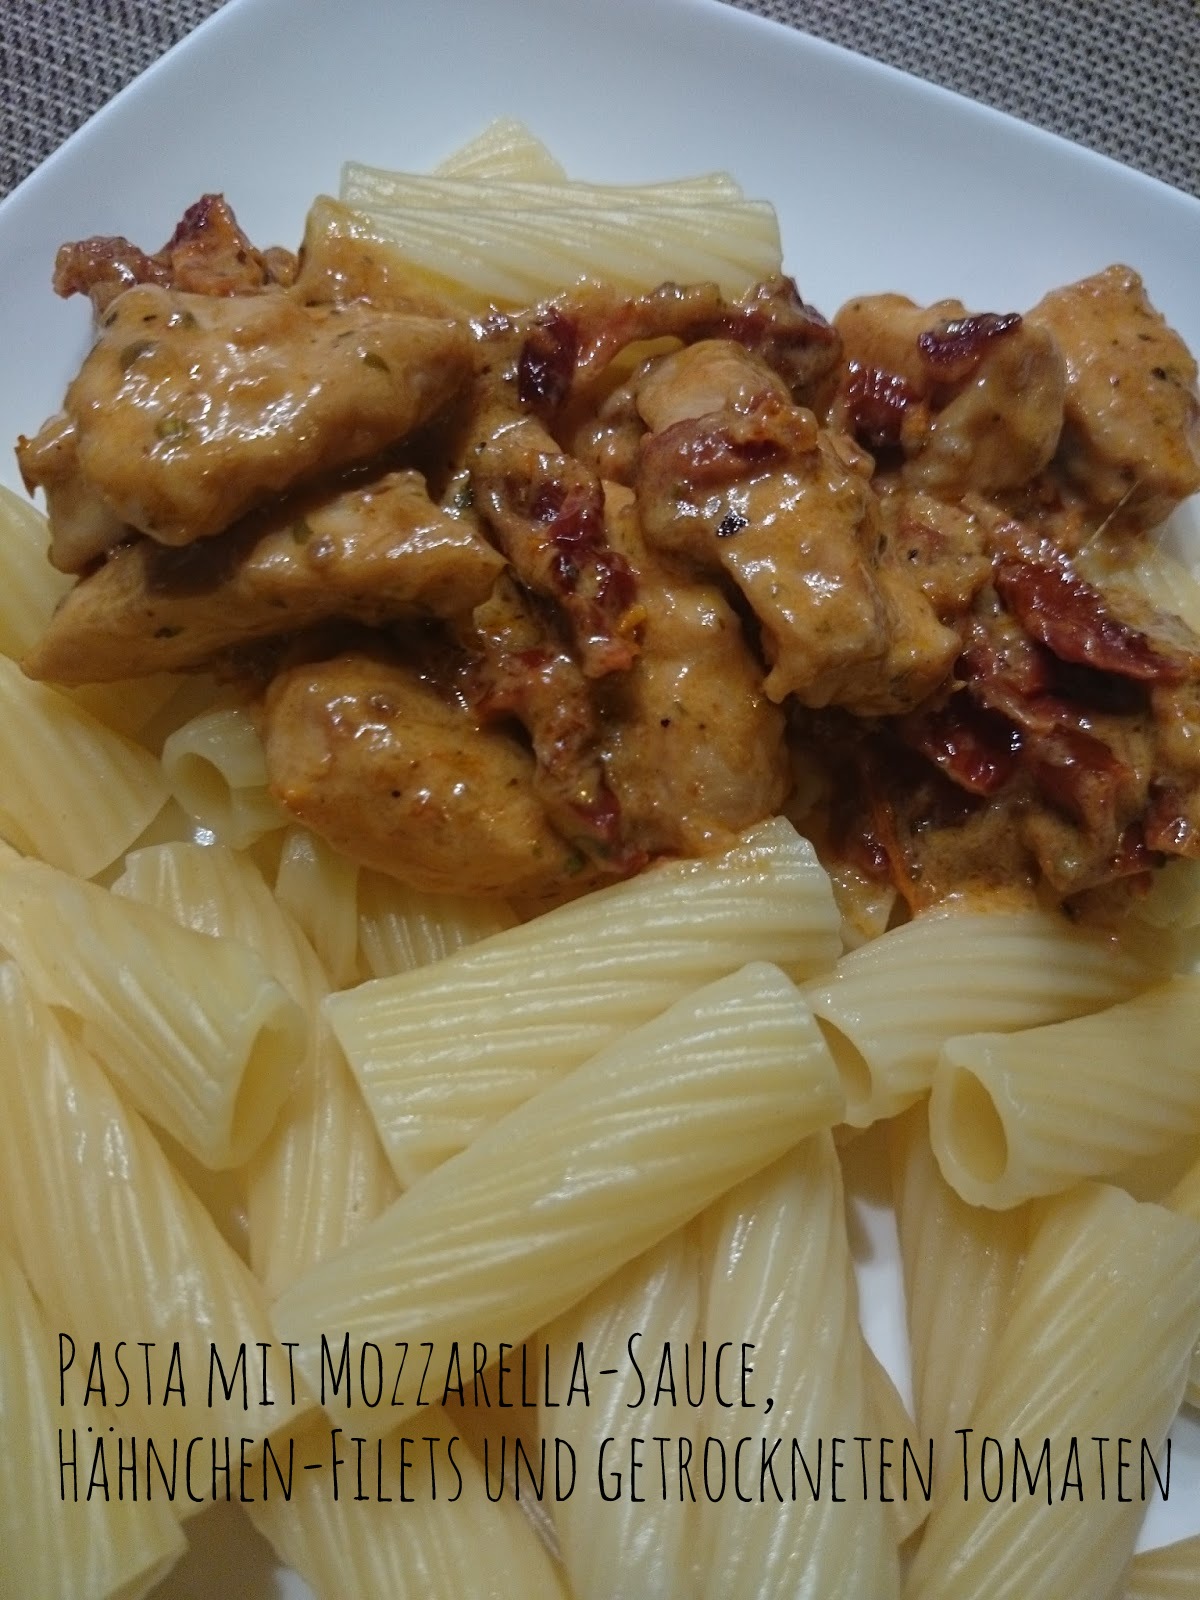  Pasta mit Mozzarella-Sauce, Hähnchen-Filets und getrockneten Tomaten